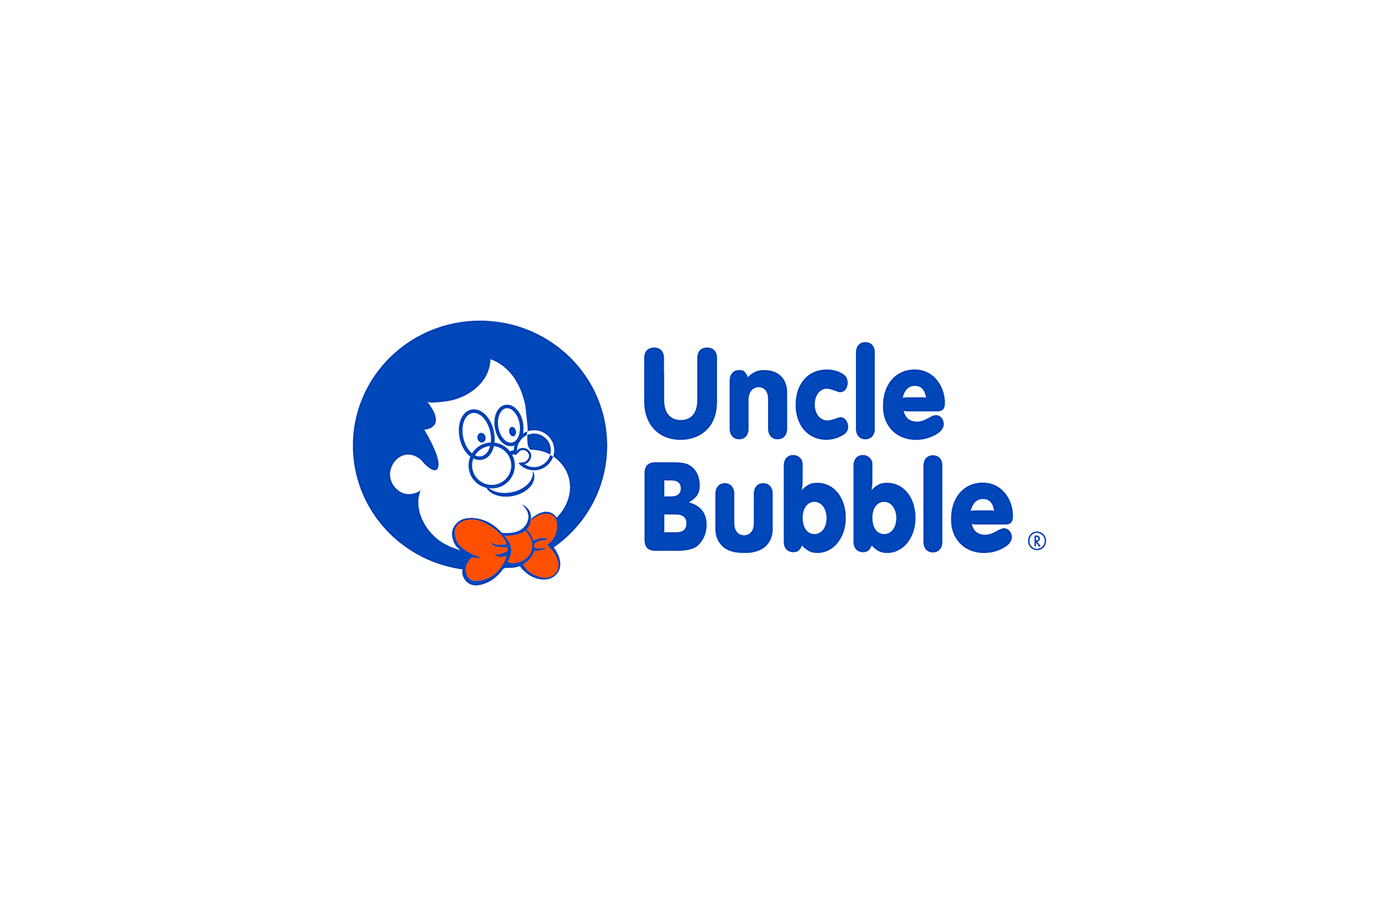  Uncle Bubble